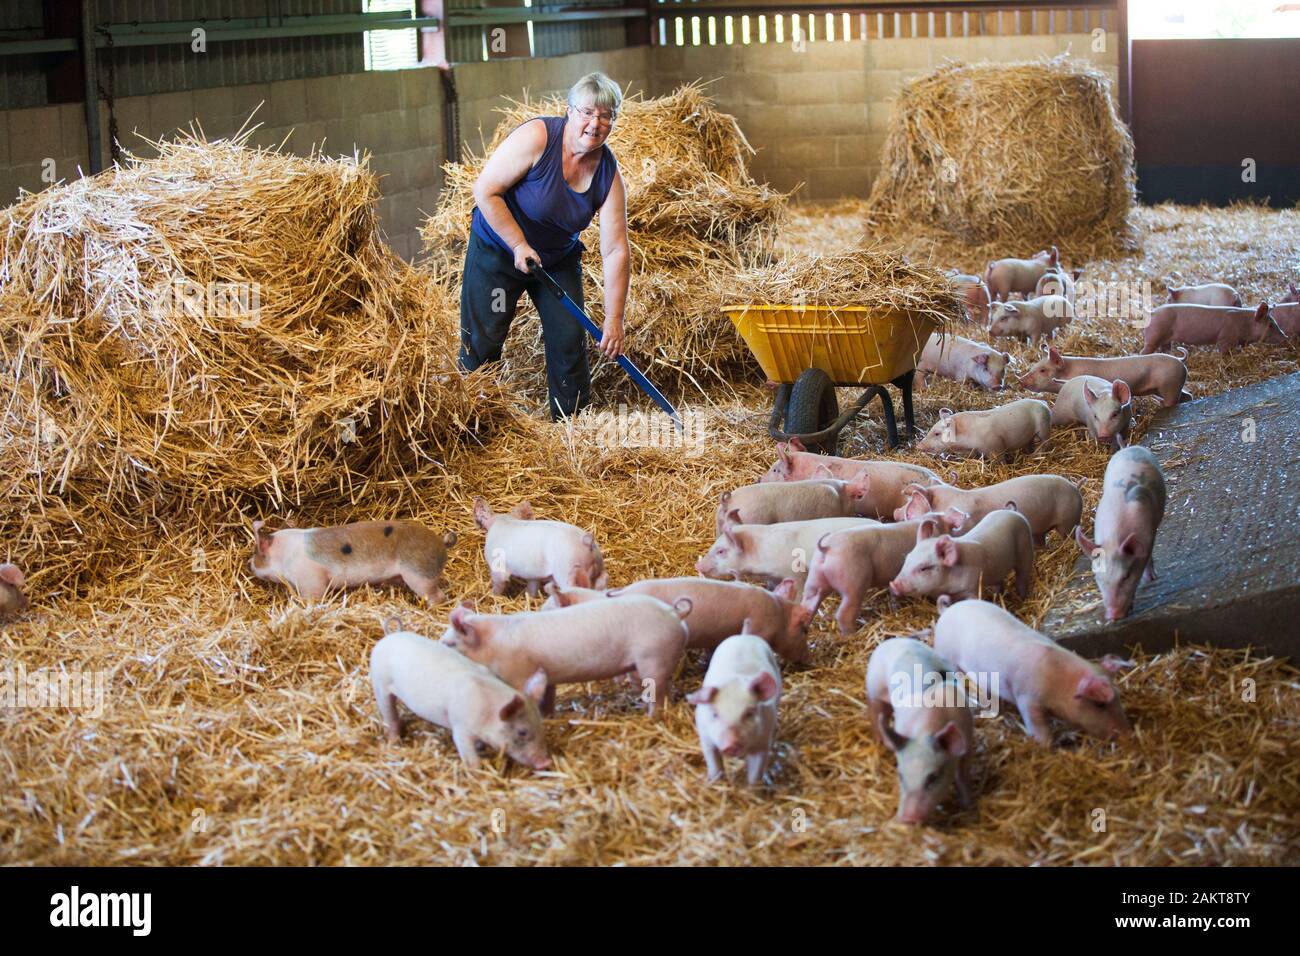 Weibliche schweine Landwirt und hofbesitzers Interessieren für Ferkel in einer hohen Tierschutz TIERSCHUTZVEREIN Versichert akkreditierten Umgebung. Norwich. Vereinigtes Königreich. Stockfoto